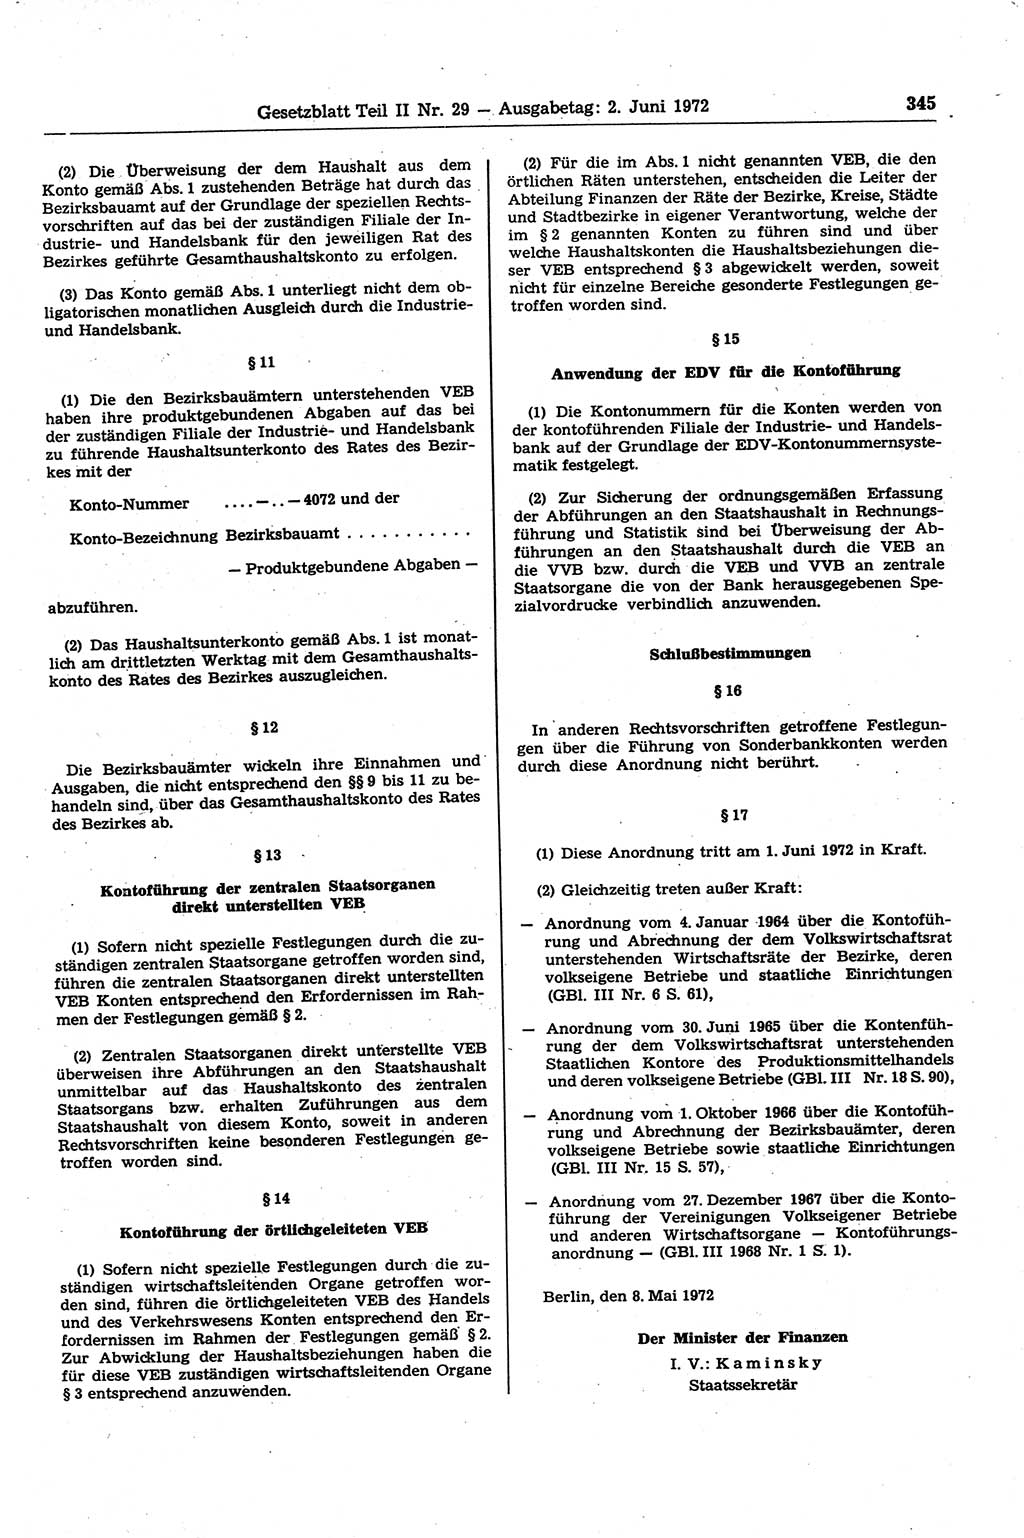 Gesetzblatt (GBl.) der Deutschen Demokratischen Republik (DDR) Teil ⅠⅠ 1972, Seite 345 (GBl. DDR ⅠⅠ 1972, S. 345)